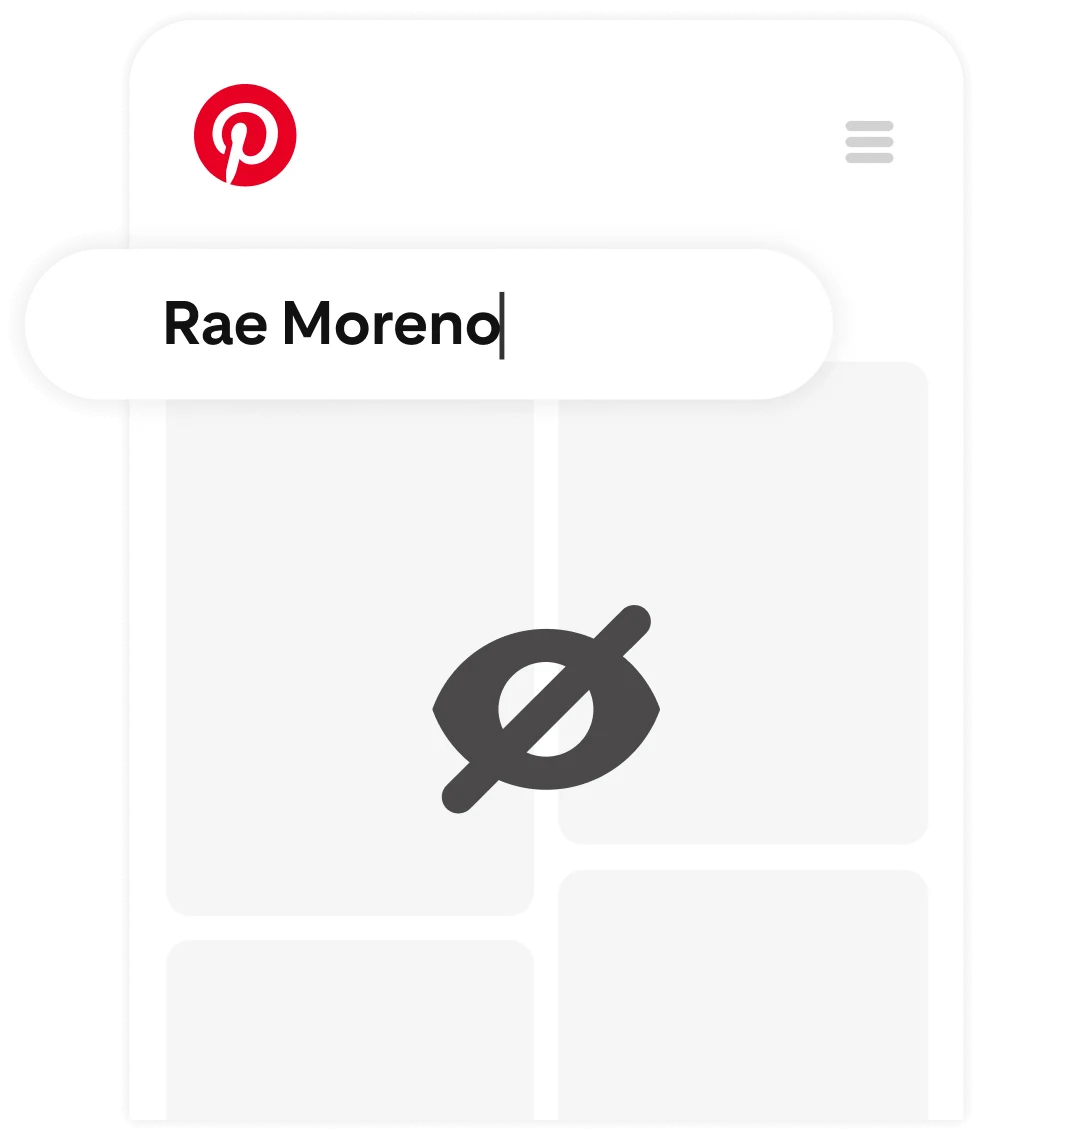 Um feed privado do Pinterest com o nome "Rae Moreno" digitado na barra de pesquisa.